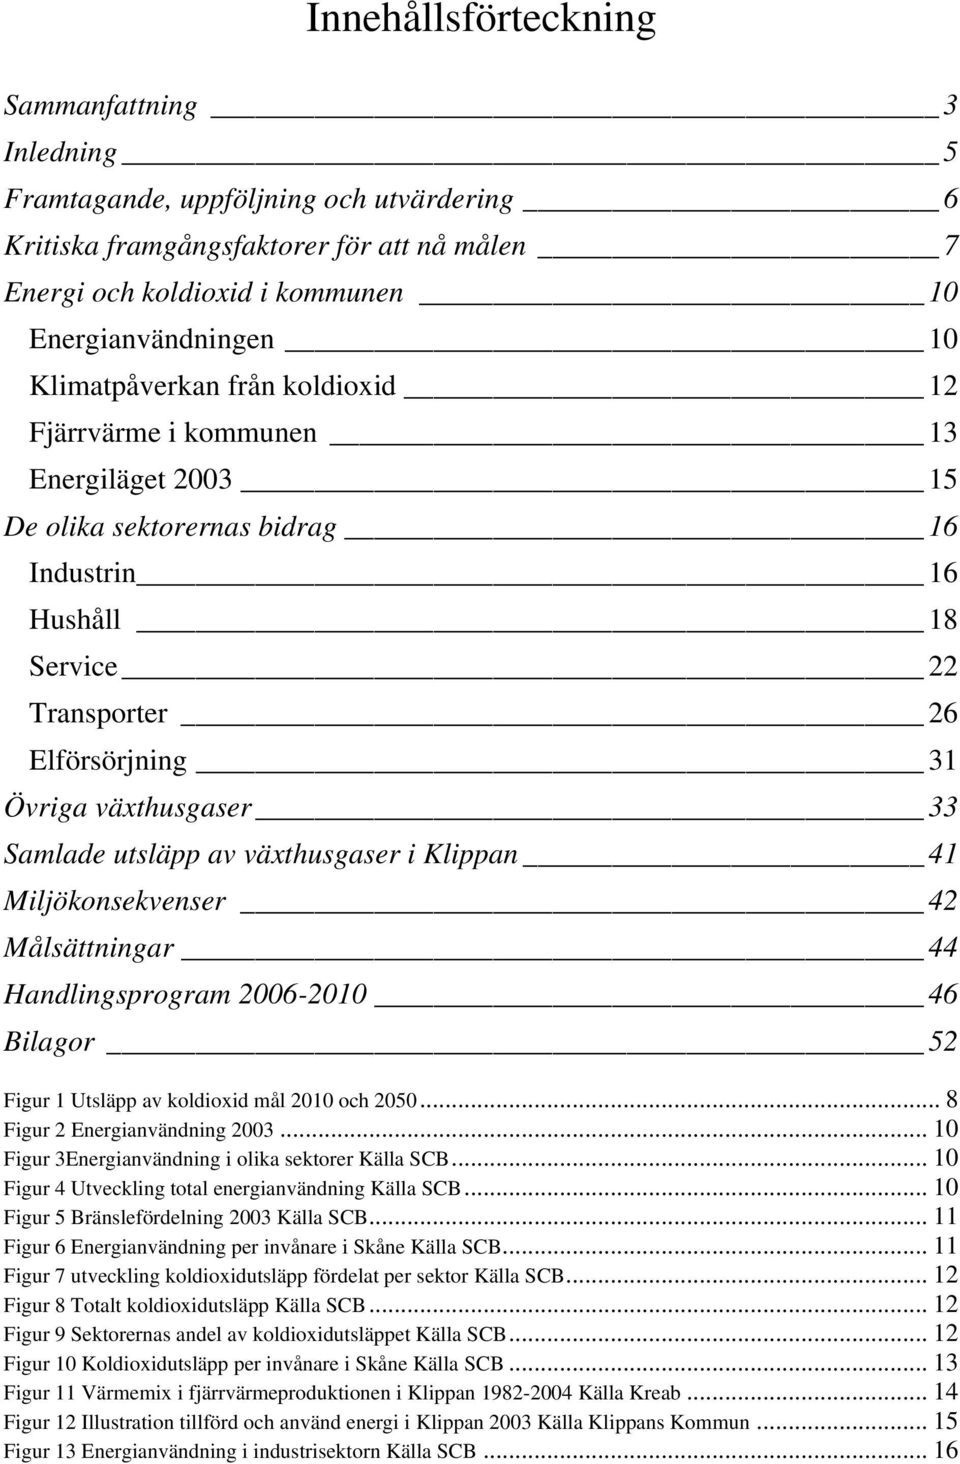 Samlade utsläpp av växthusgaser i Klippan 41 Miljökonsekvenser 42 Målsättningar 44 Handlingsprogram 2006-2010 46 Bilagor 52 Figur 1 Utsläpp av koldioxid mål 2010 och 2050.